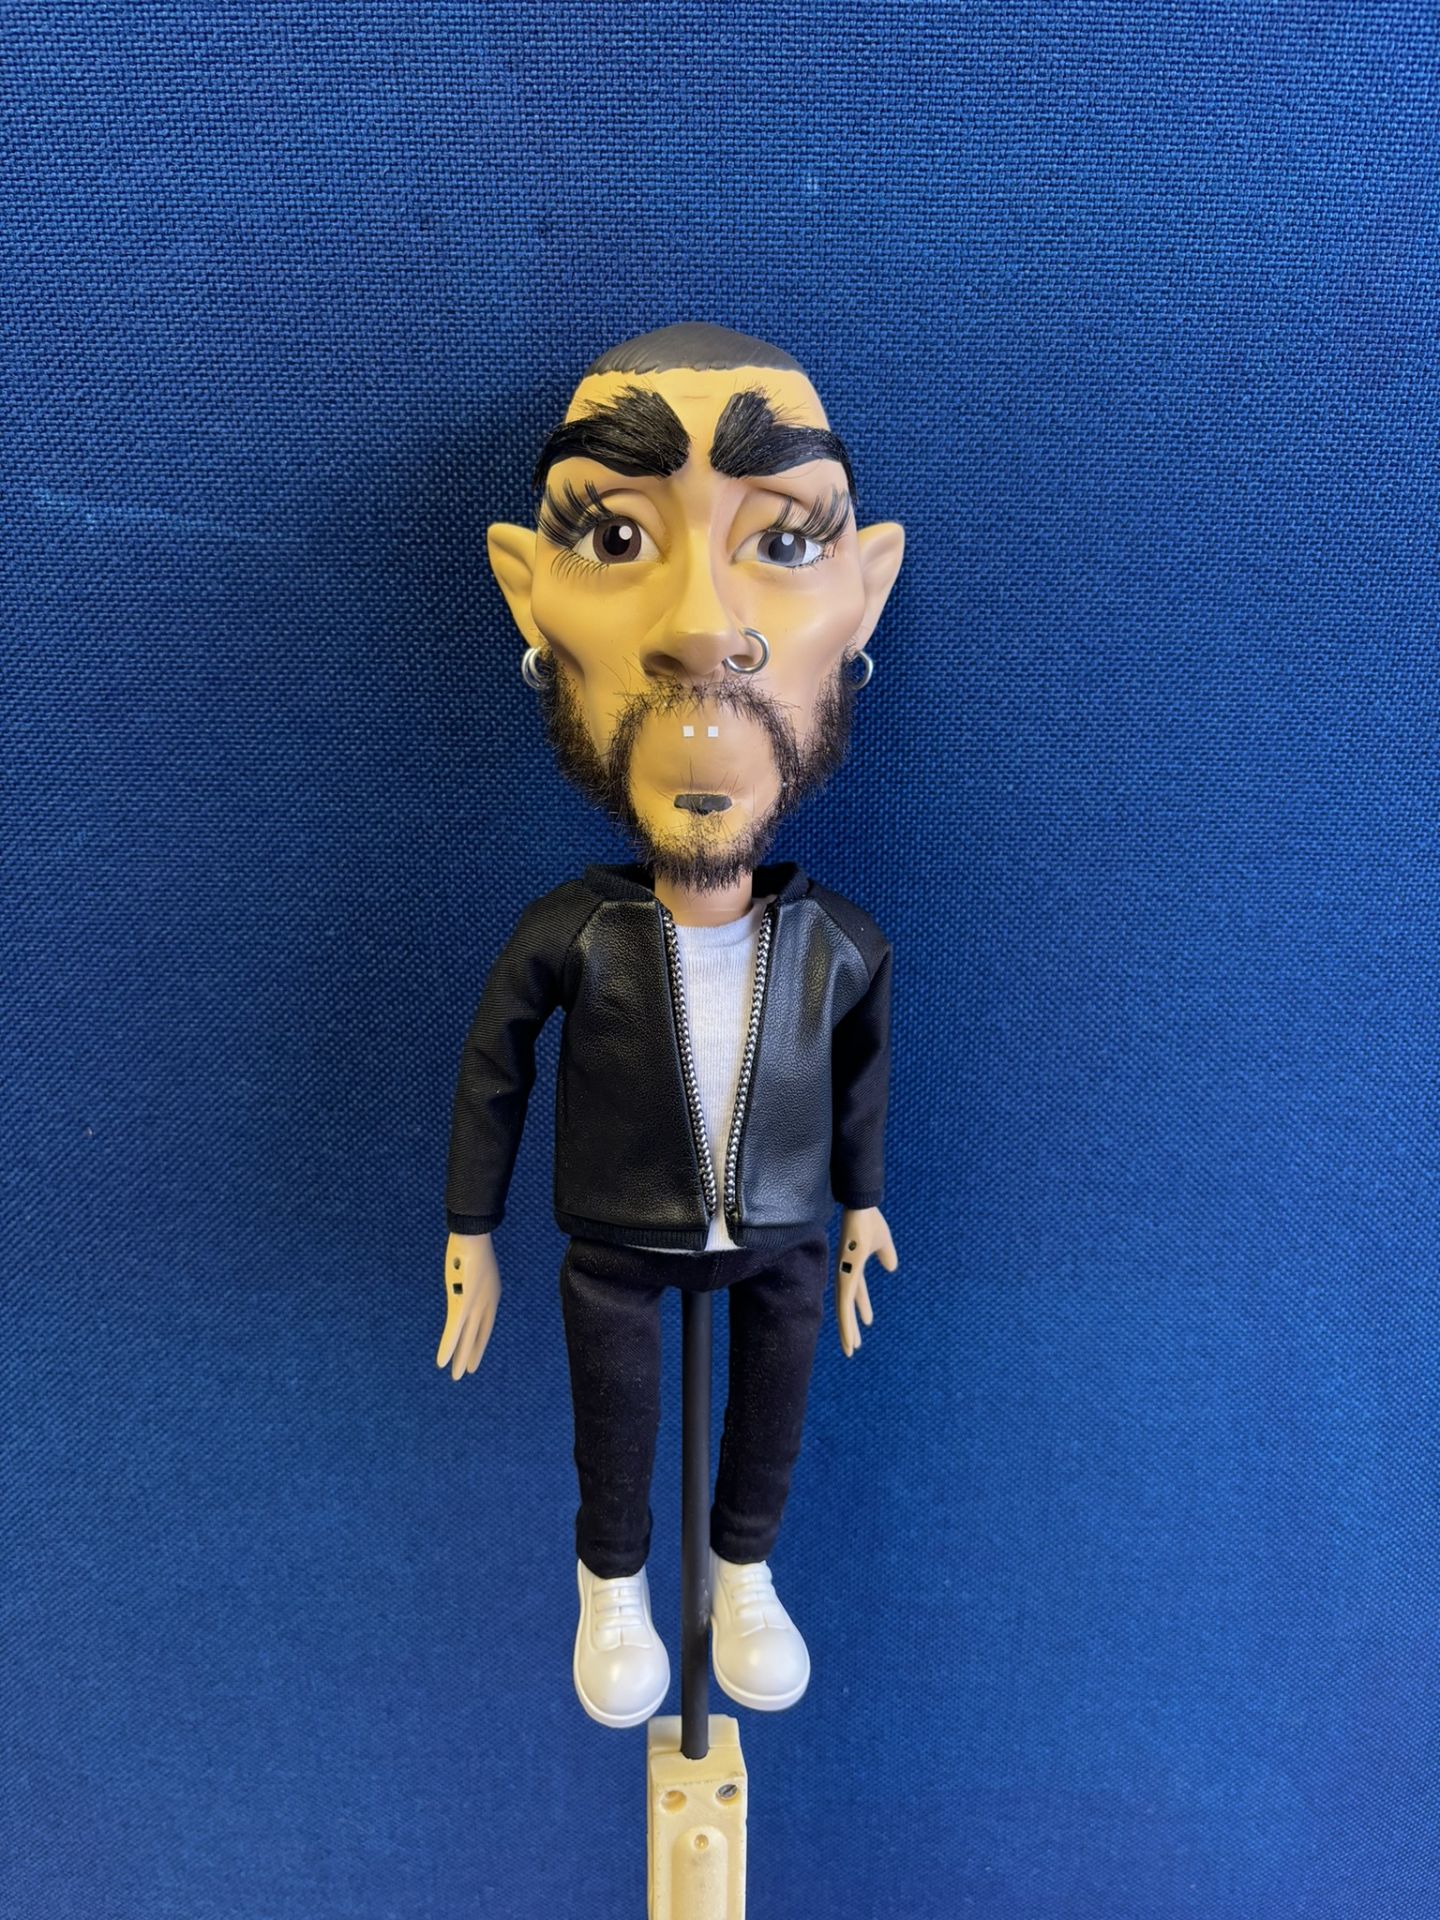 Newzoid puppet - Zayn Malik - Image 2 of 3